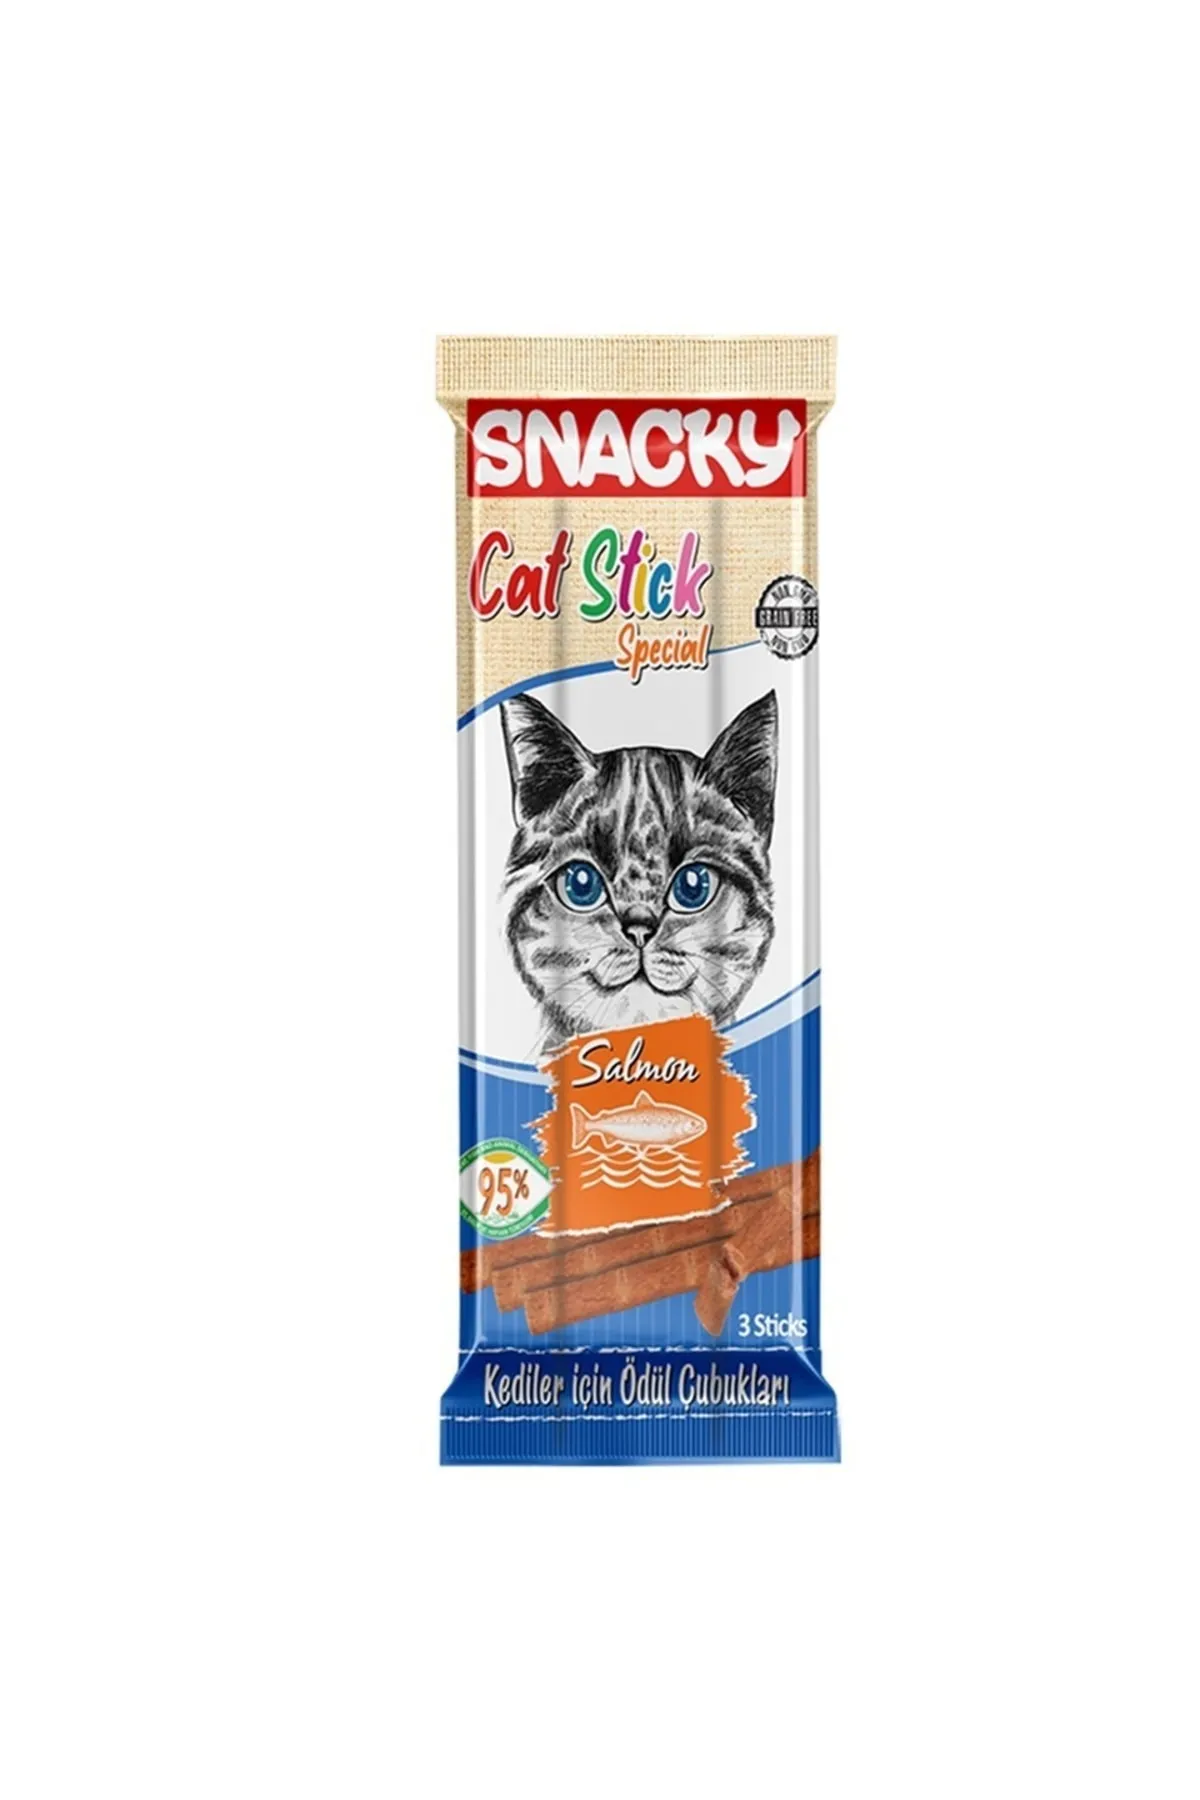 Snacky - Snacky Kedi Stick Ödül Maması Somonlu 5grx3 Adet